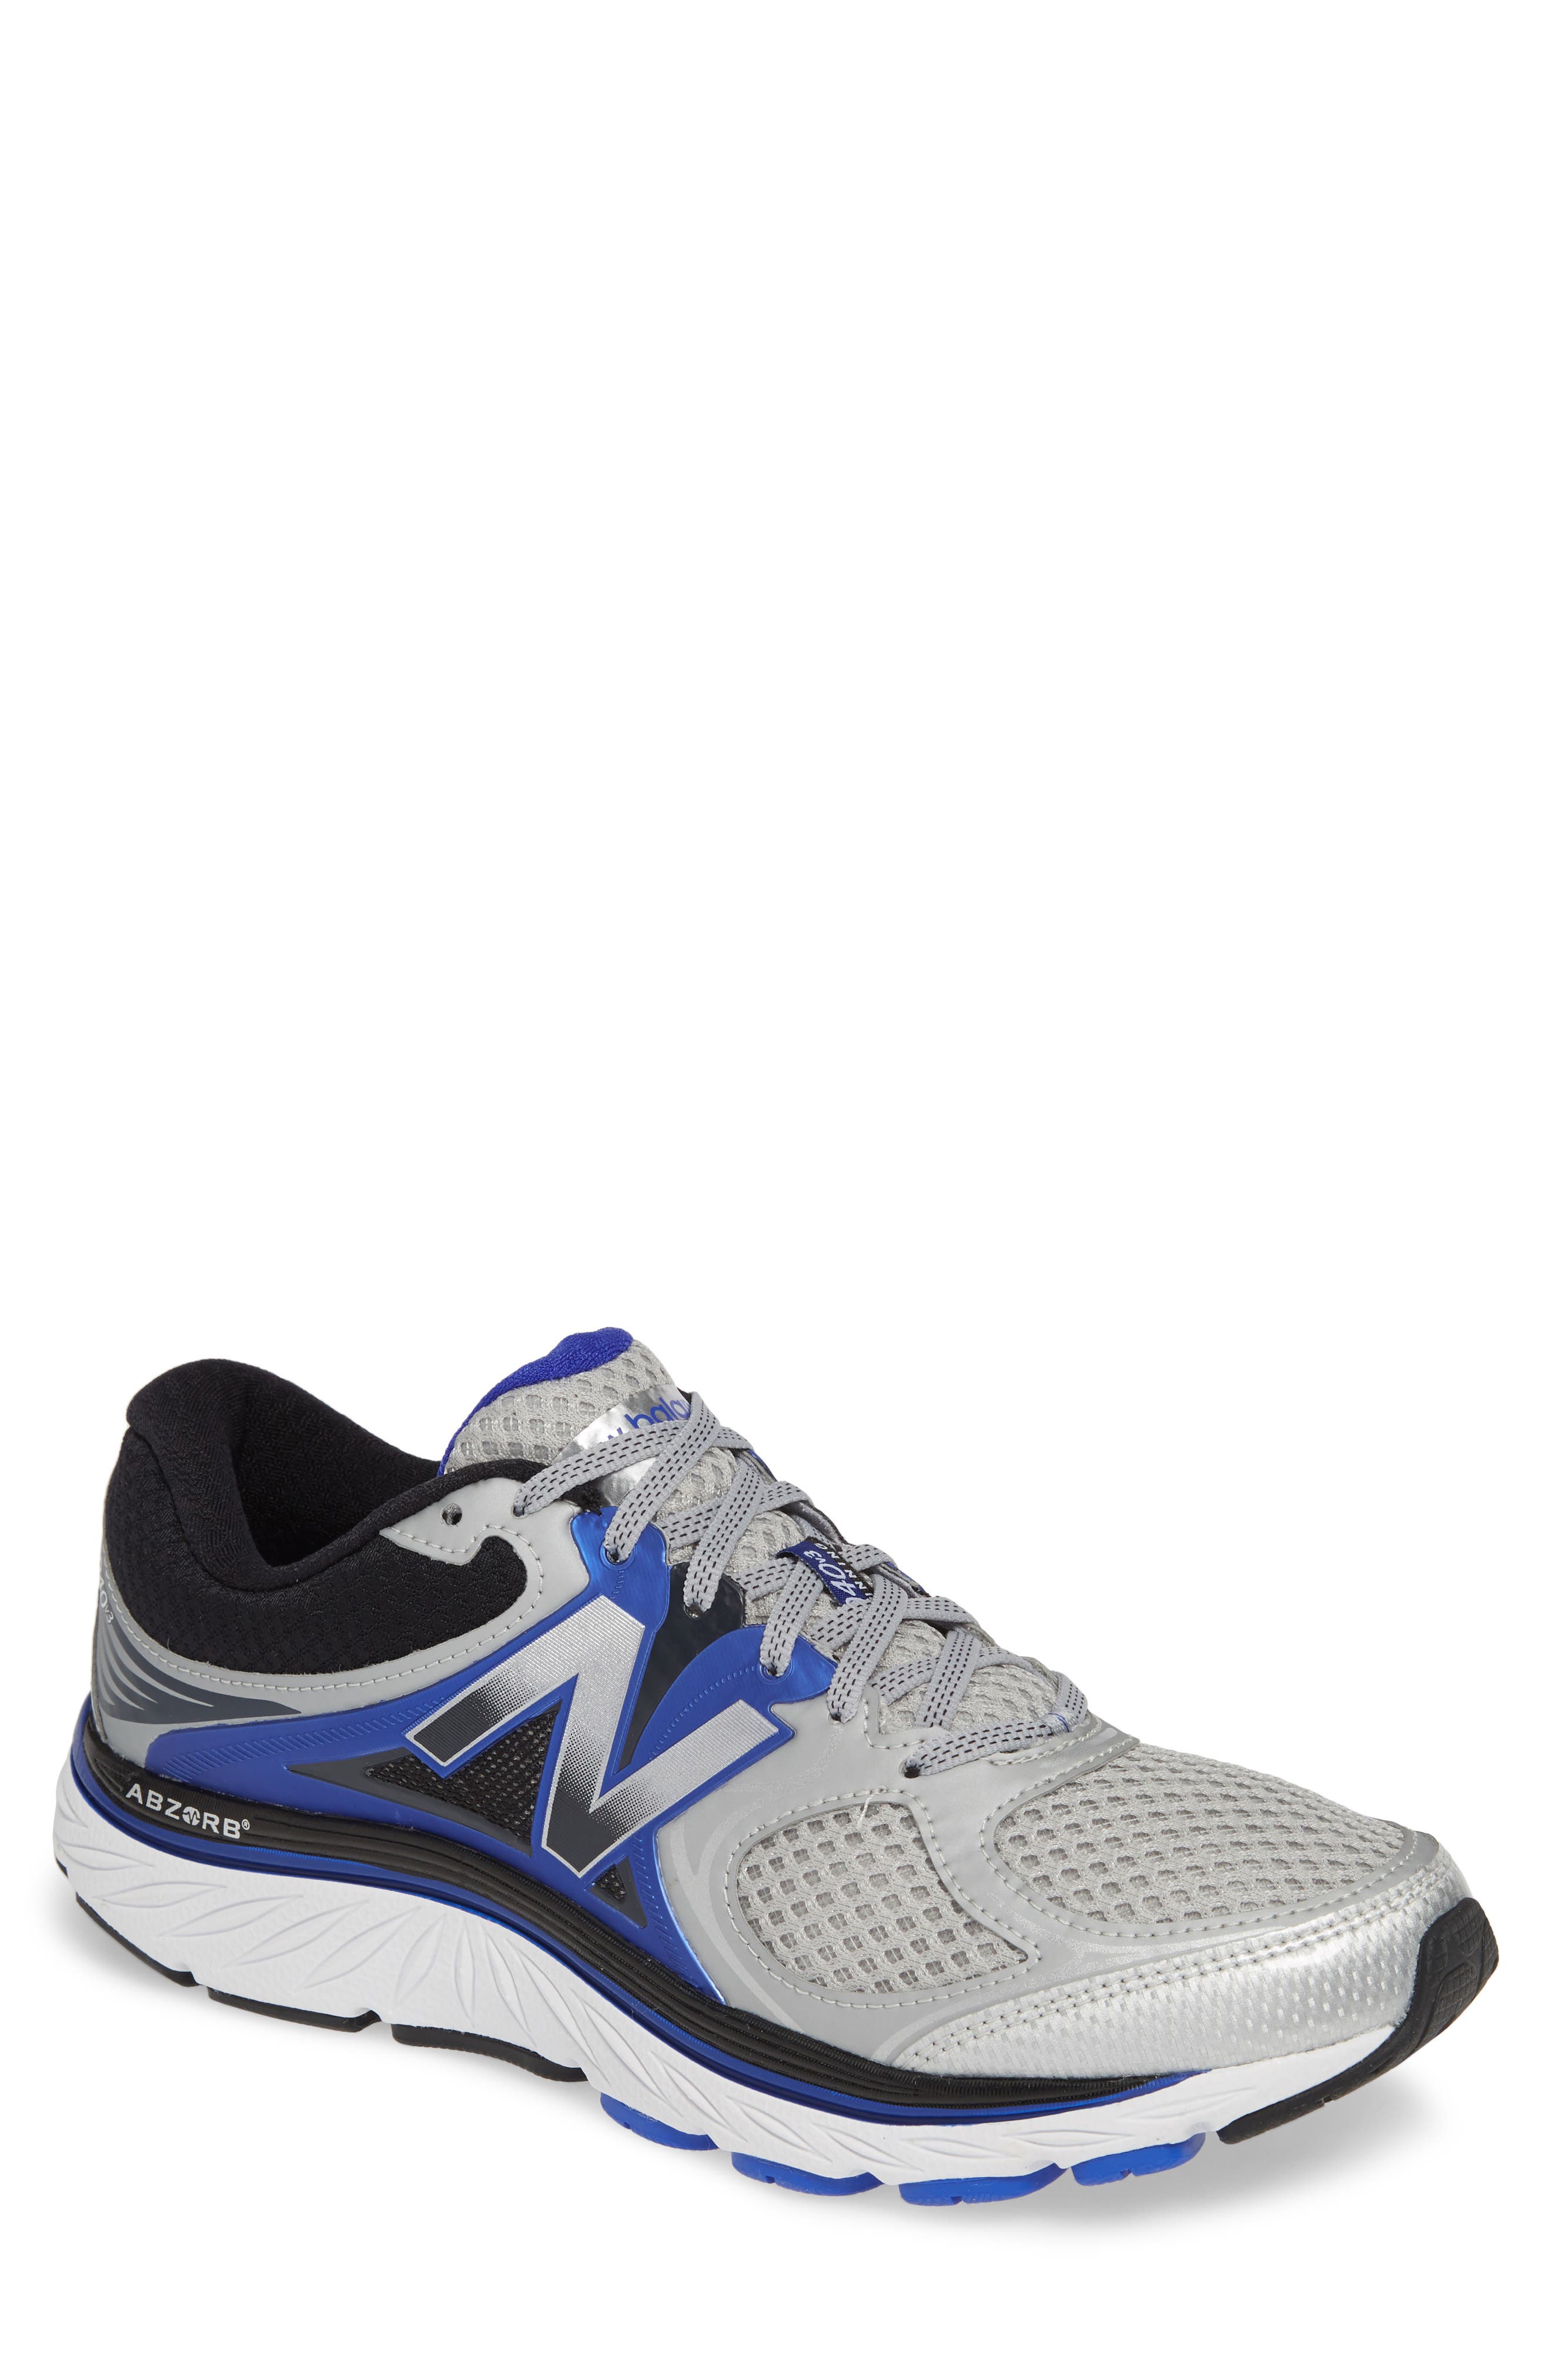 new balance men's 940v3 running shoe